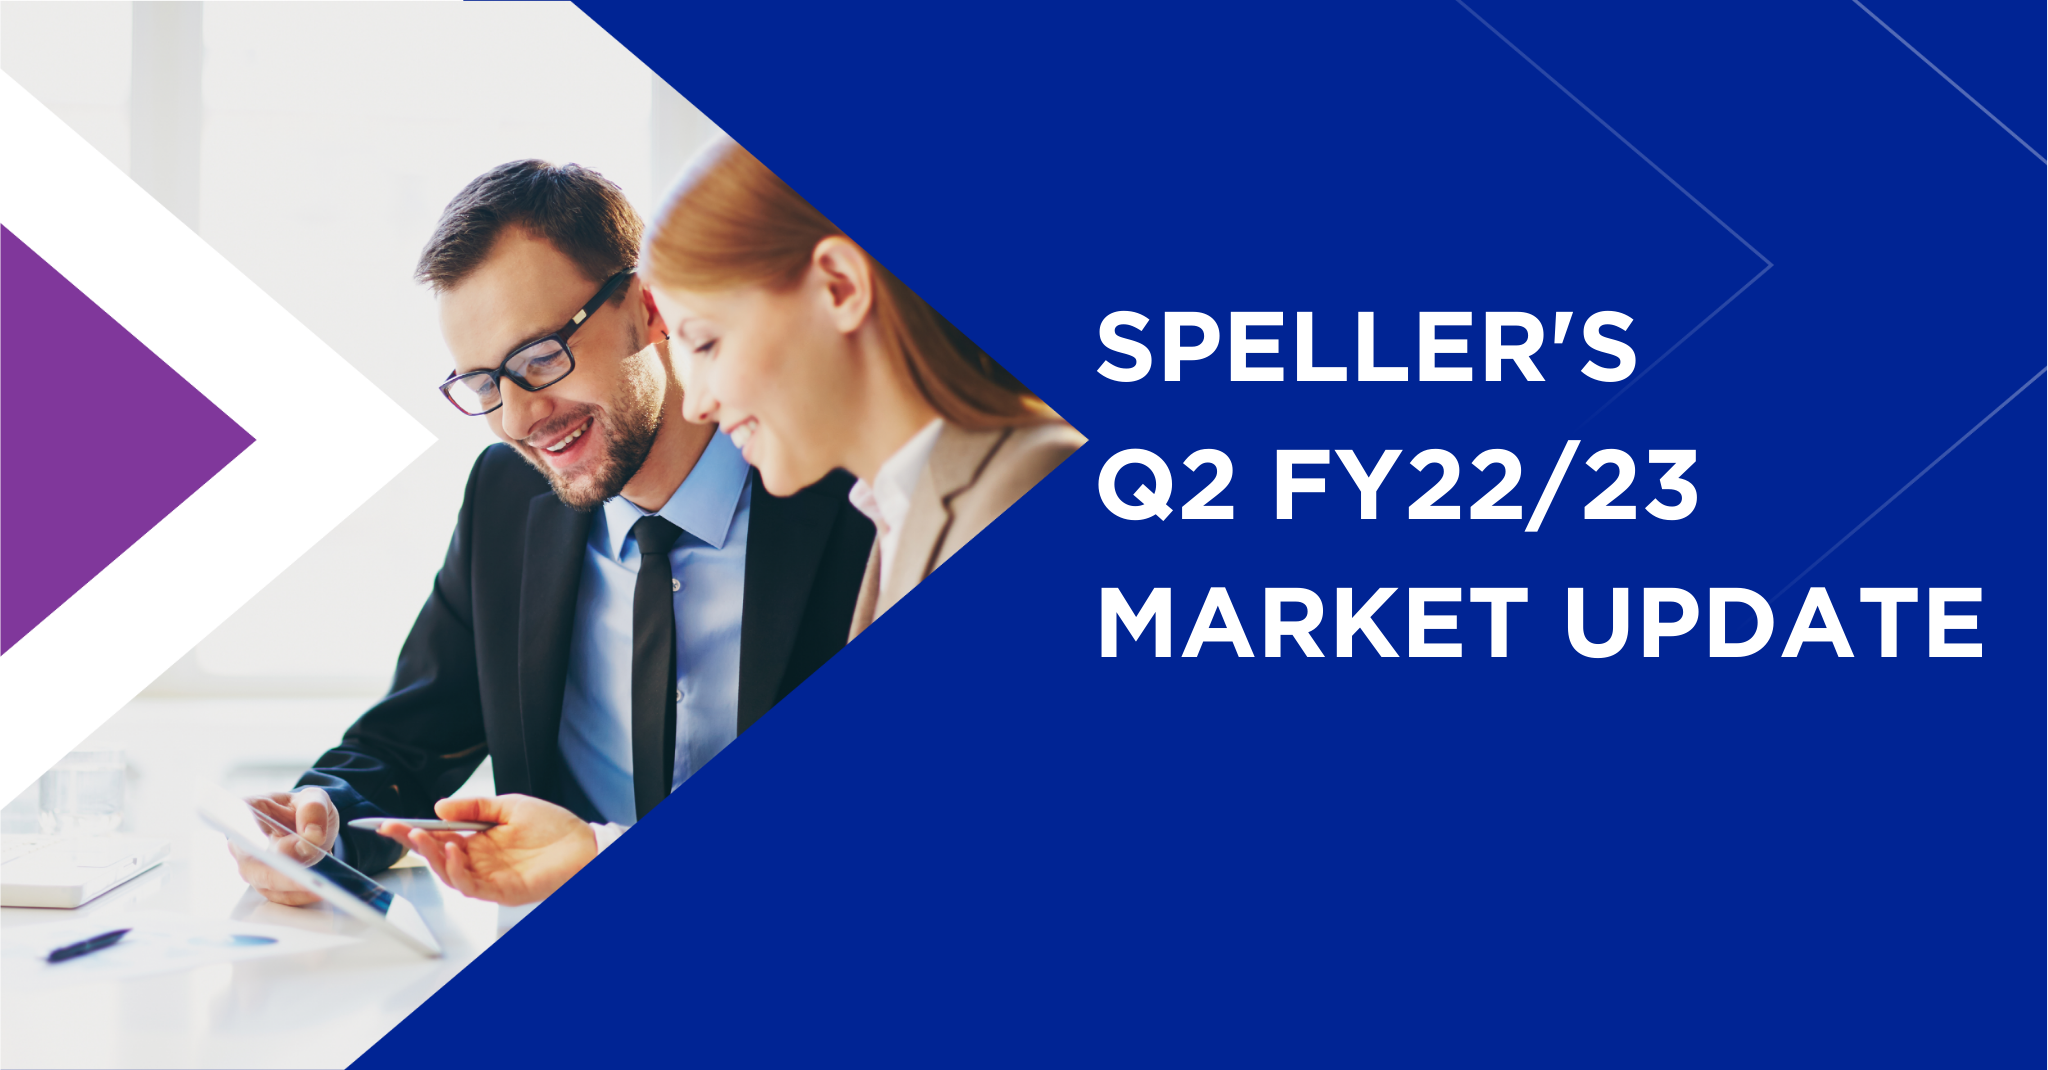 Speller's Q2 Market Update